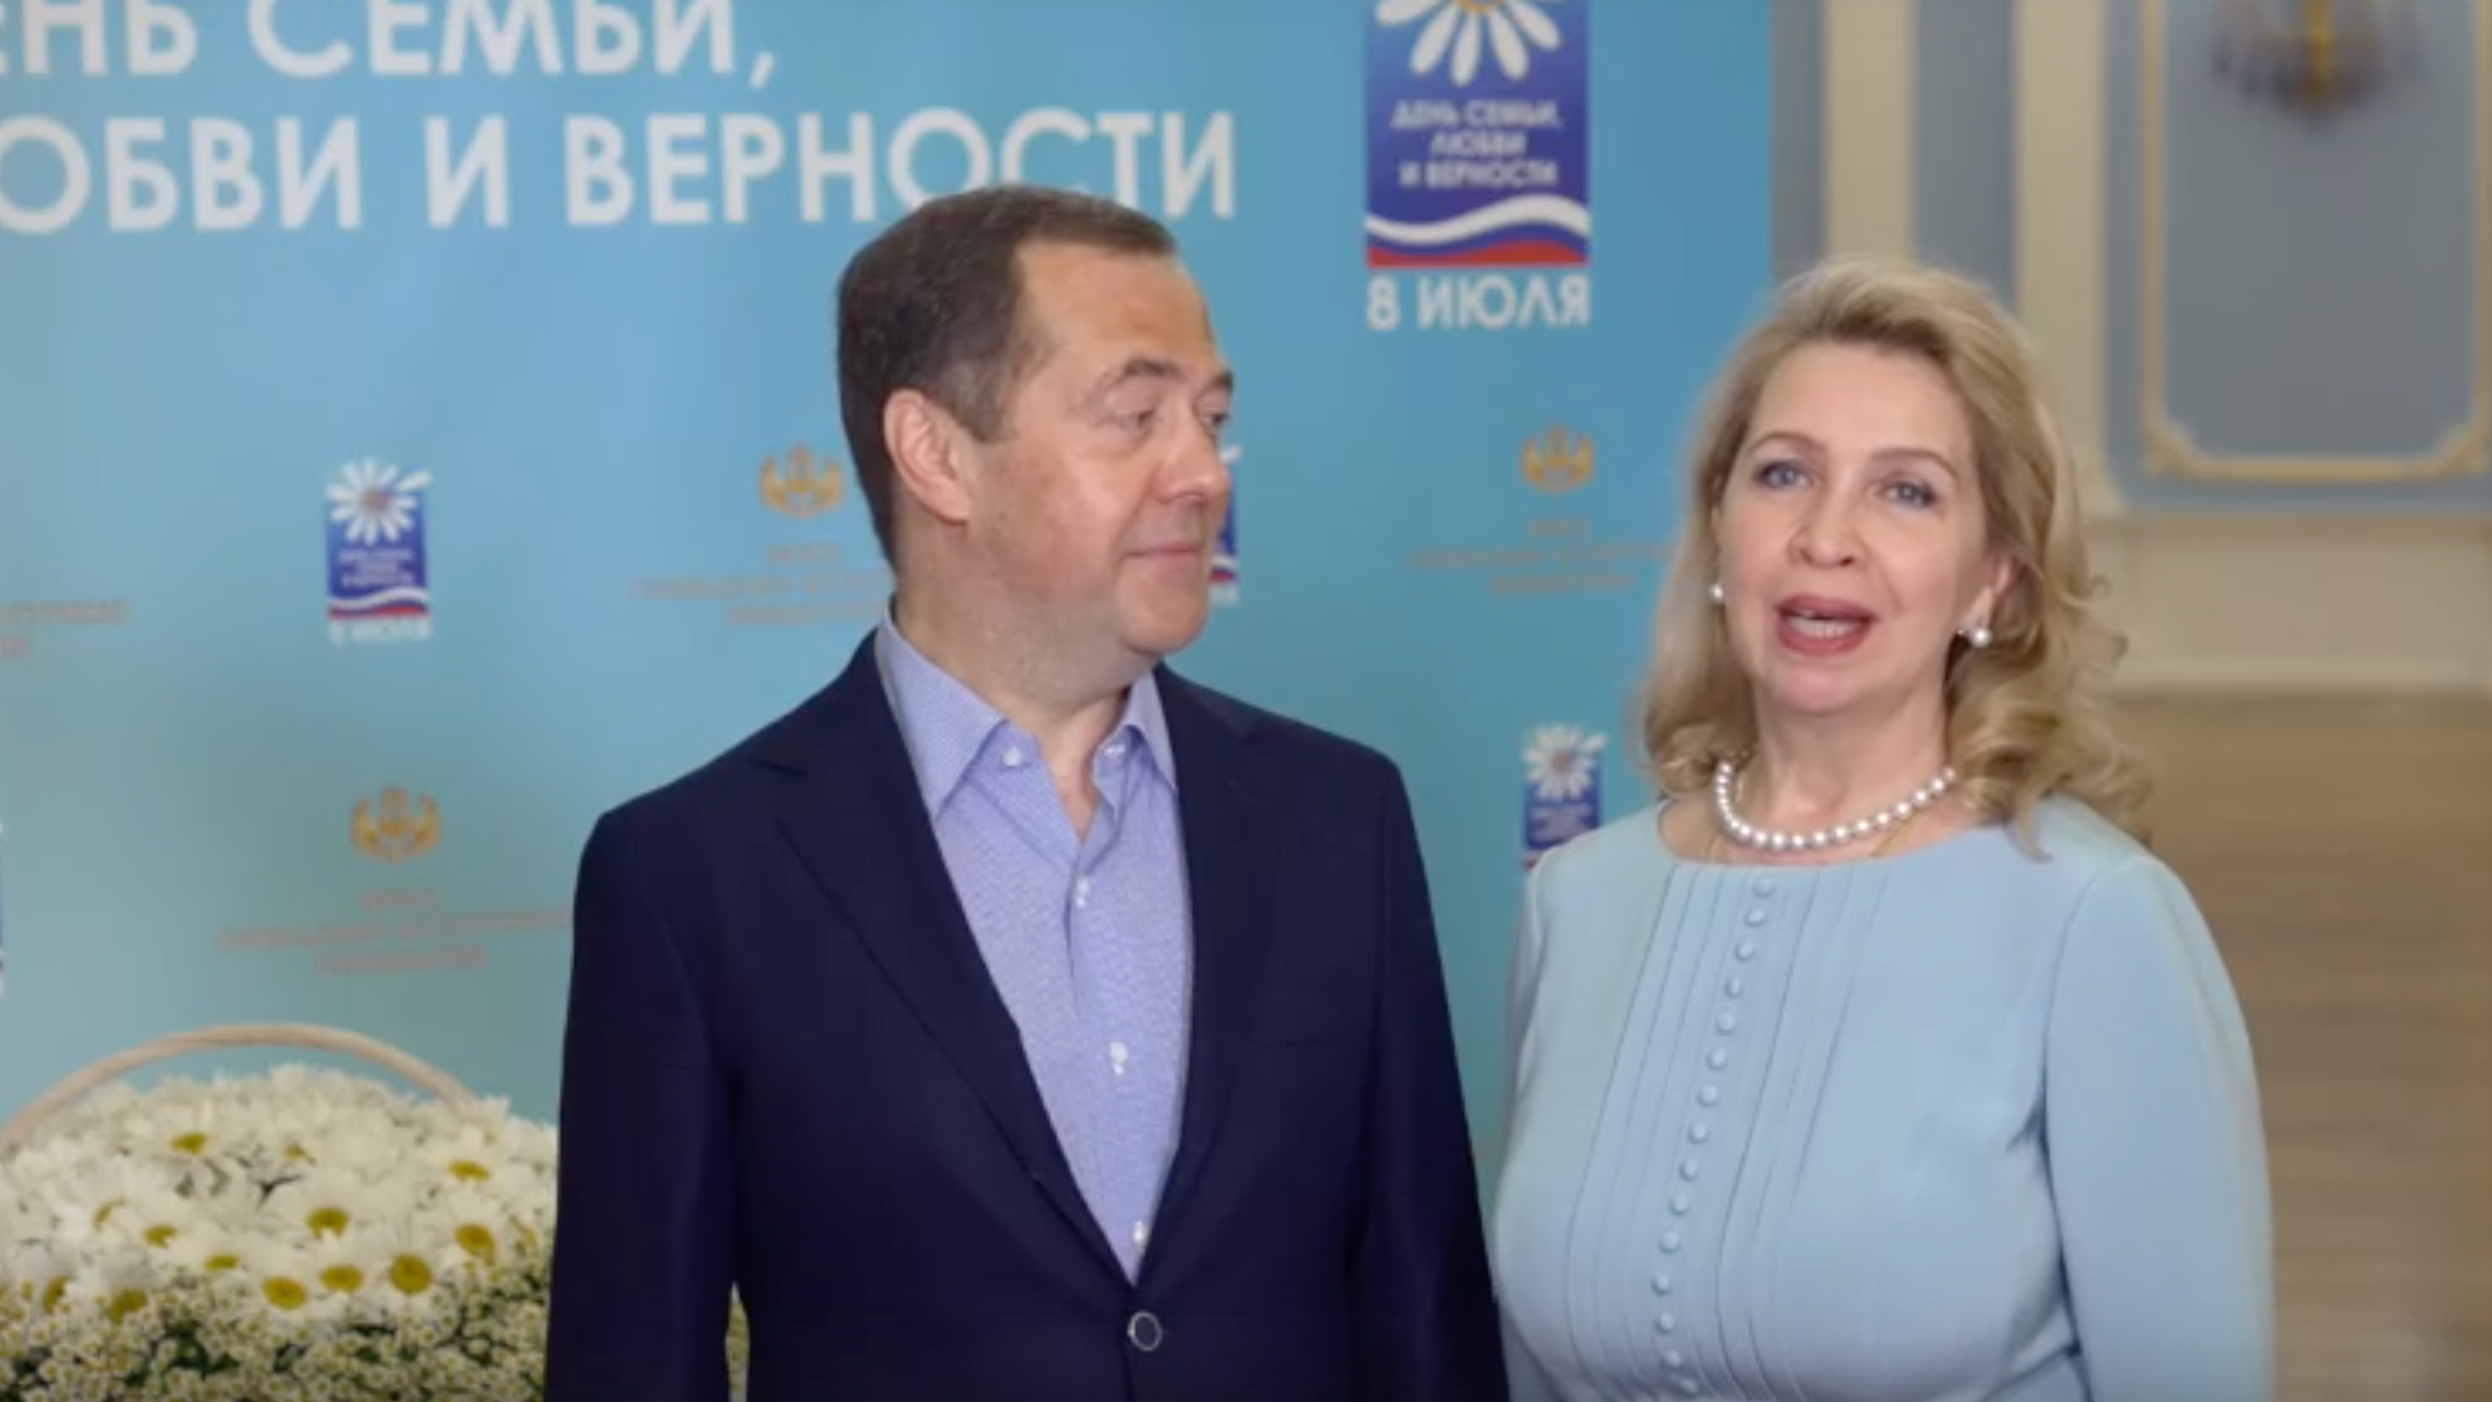 Медведев на видео с женой поздравил с Днем семьи, любви и верности